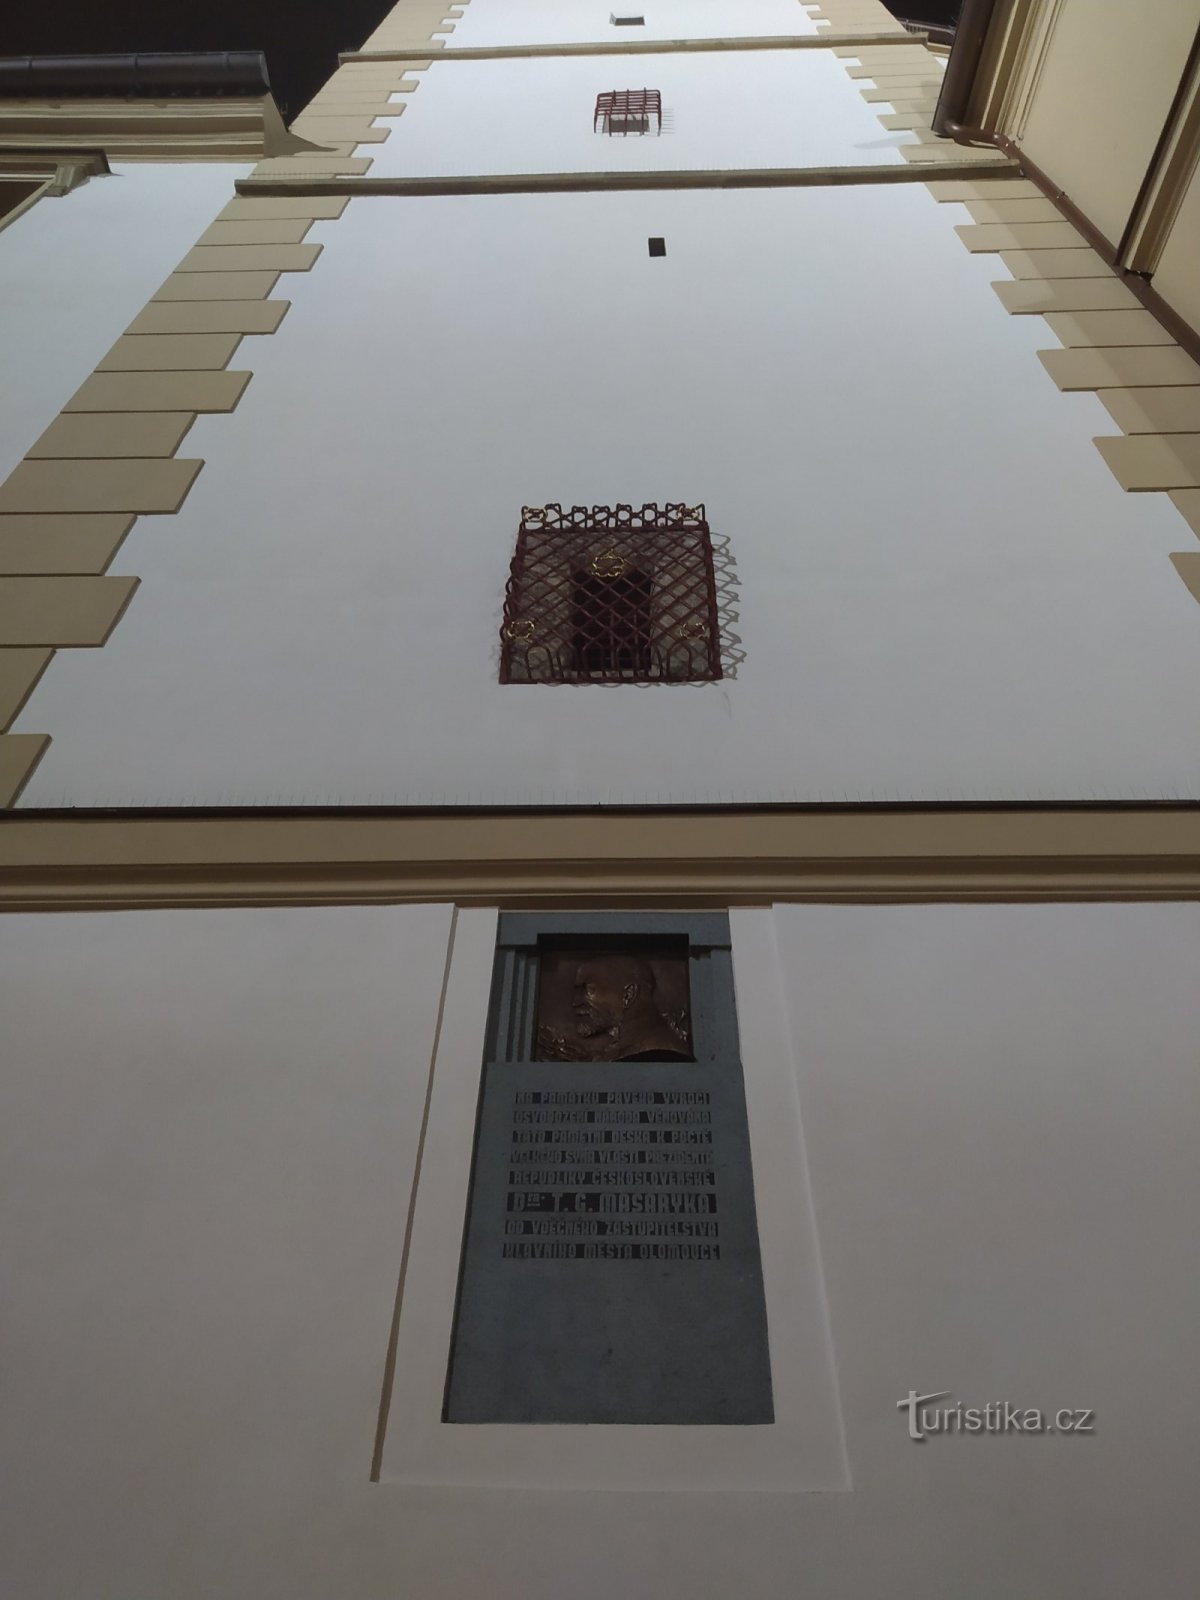 Δημαρχείο, αναμνηστική πλακέτα Masaryk